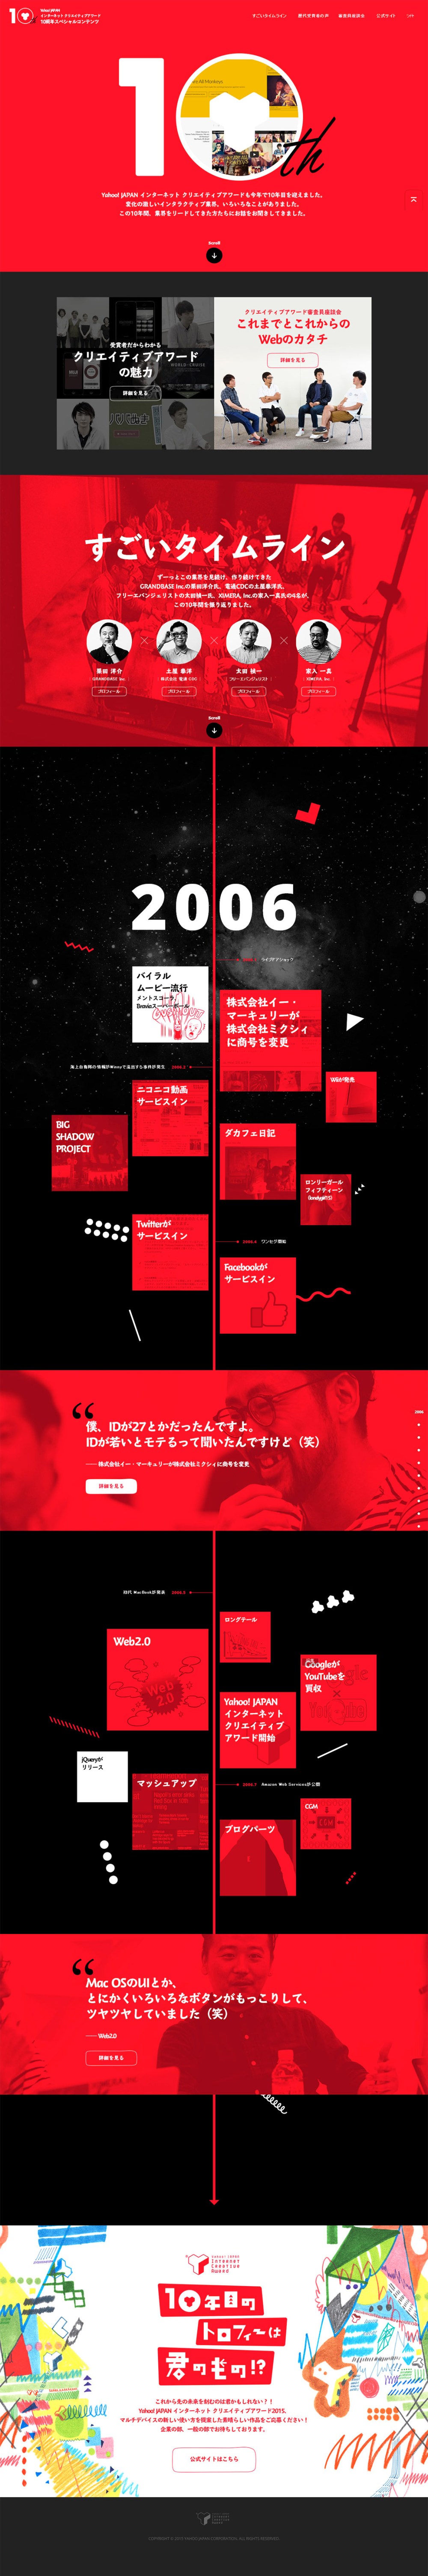 日本互联网的AWARD 10周年 专题页设计